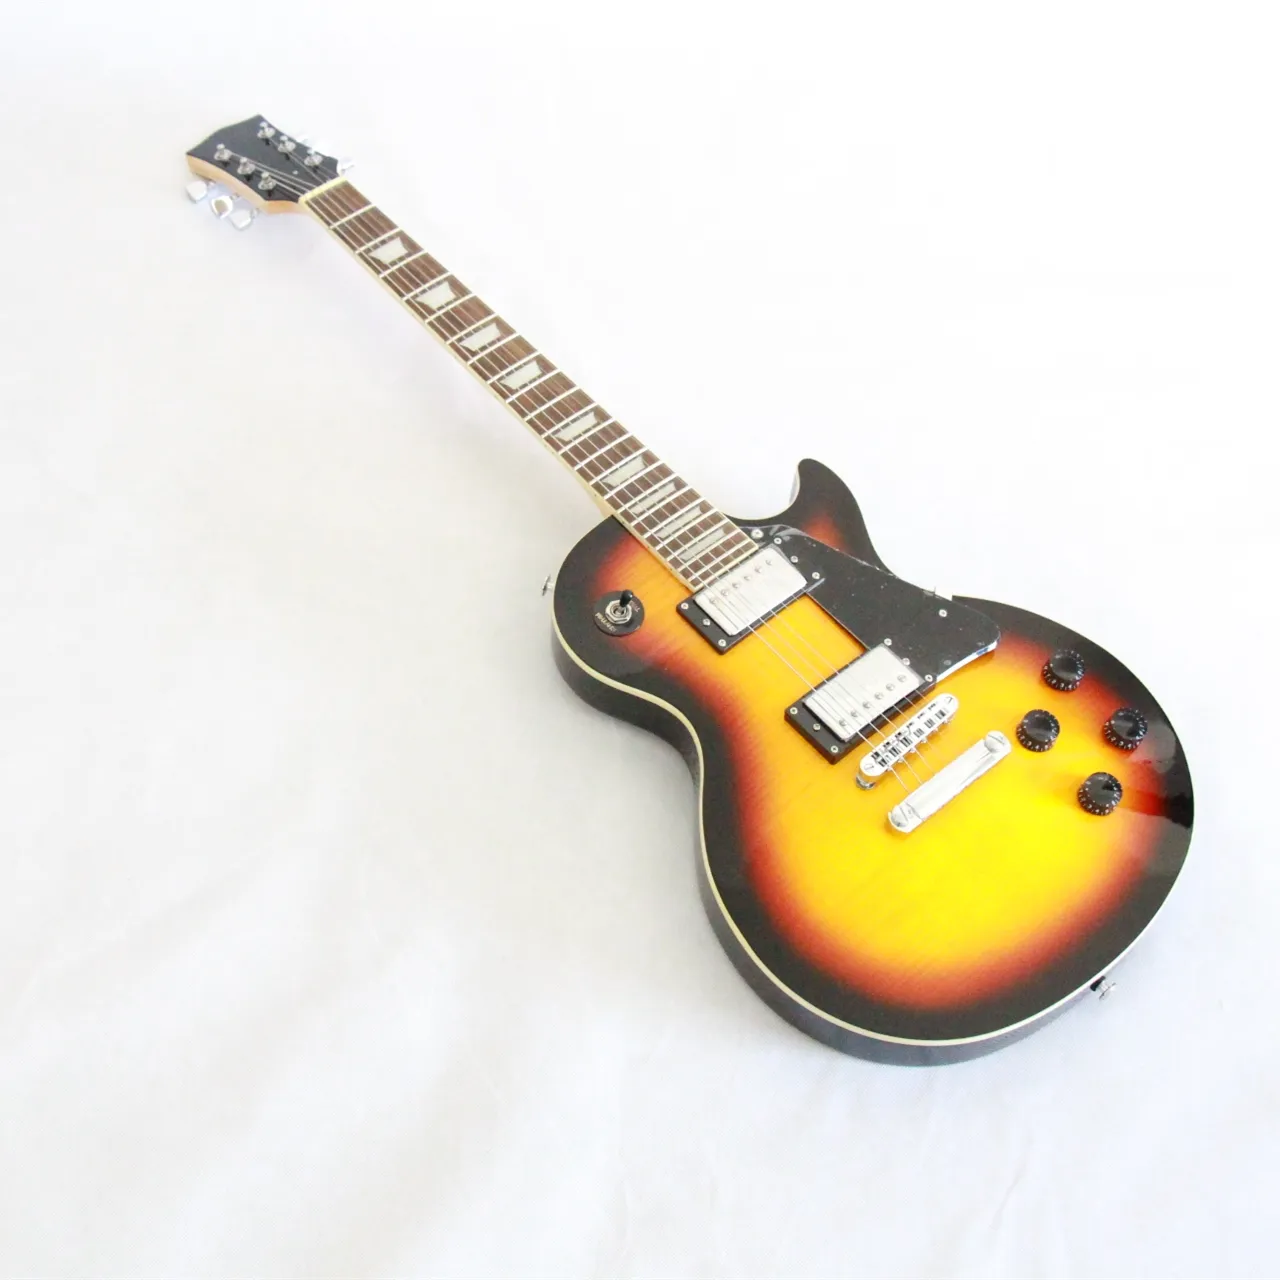 Grau superior da guitarra elétrica Chinesa guitarra guitarra elétrica mais popular de madeira feitos à mão